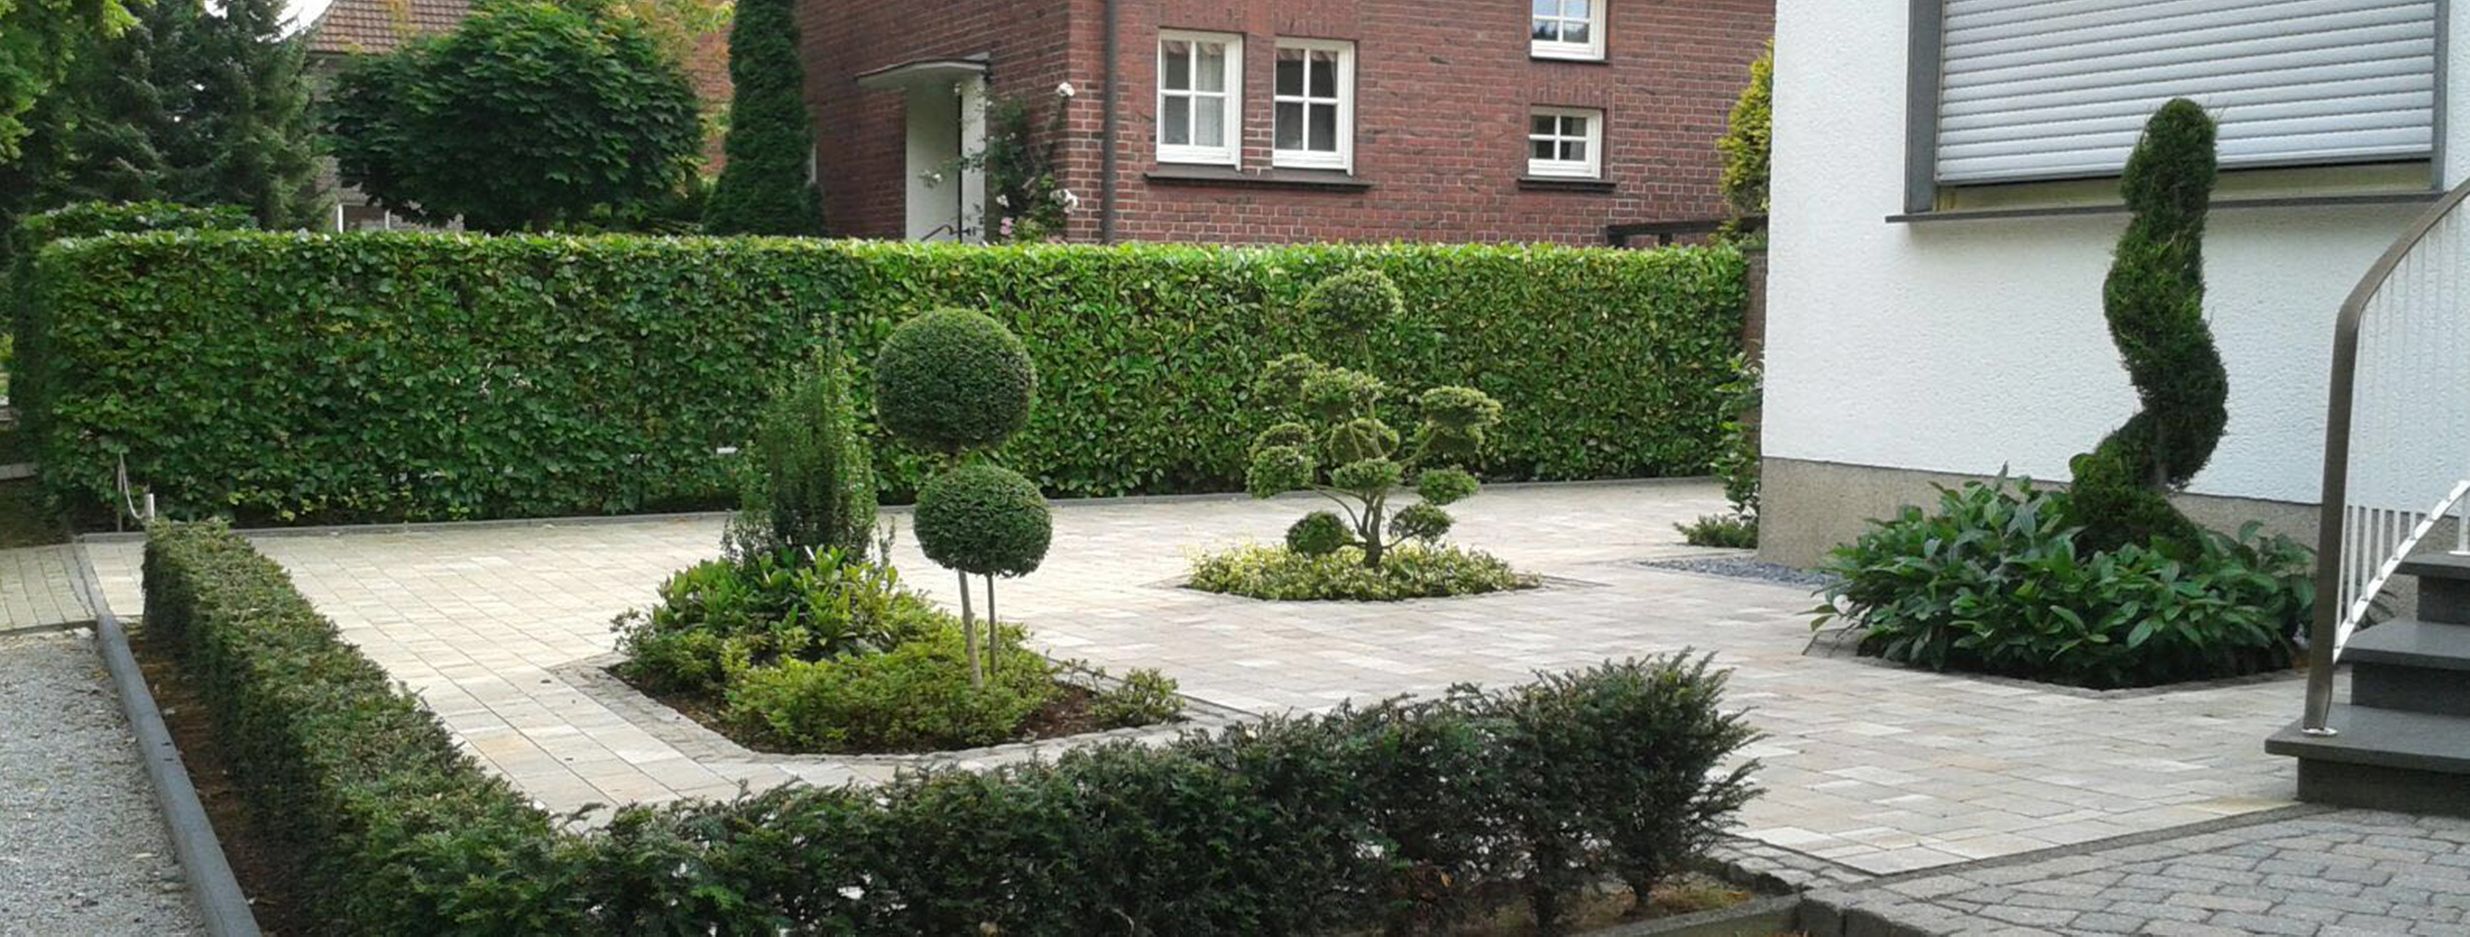 Ihr Partner für Gartengestaltung, Pflasterarbeiten und mehr - Werner Pöpping Gartengestaltung in Coesfeld